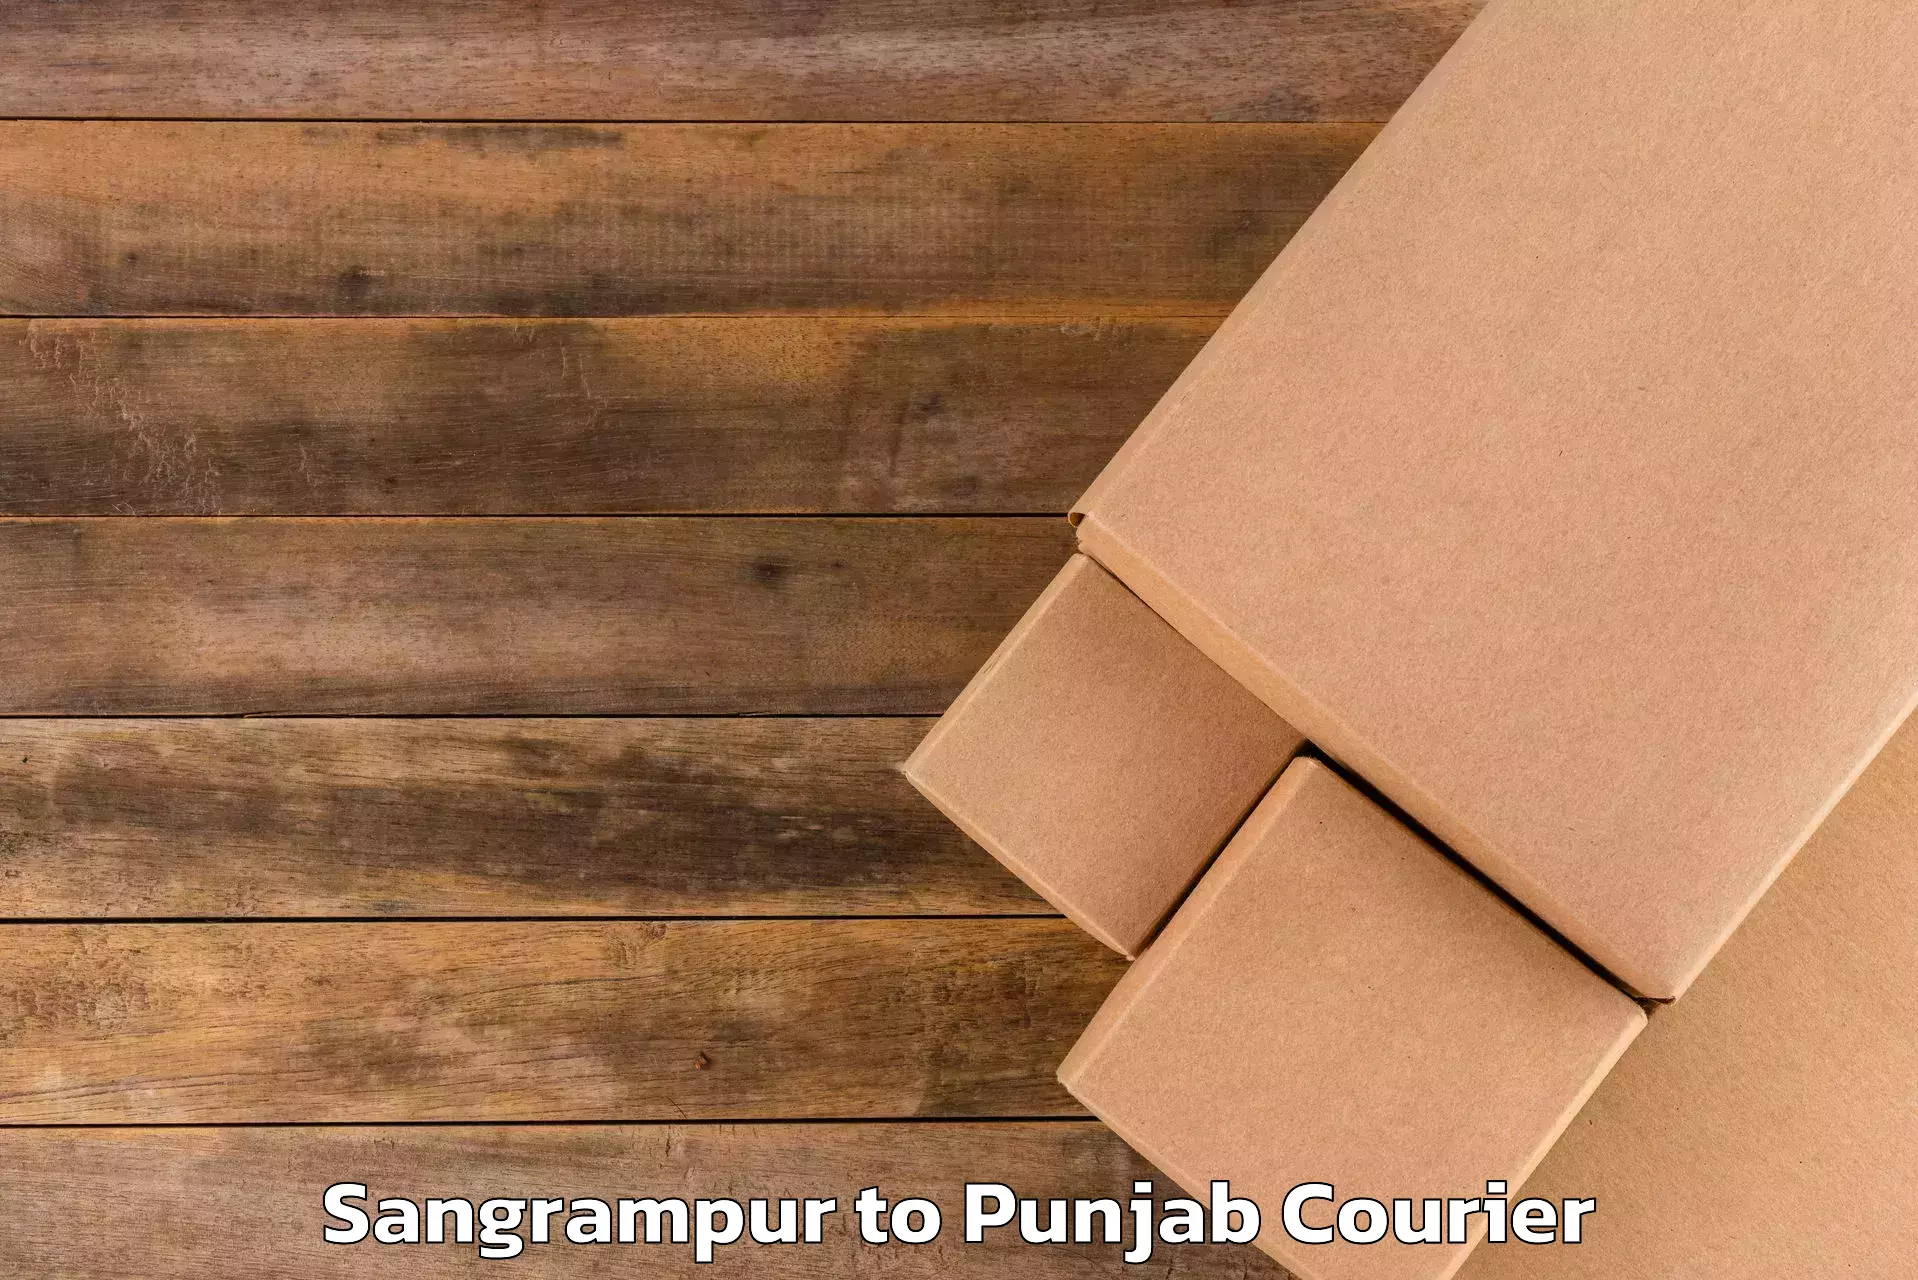 Luggage shipment processing Sangrampur to Punjab